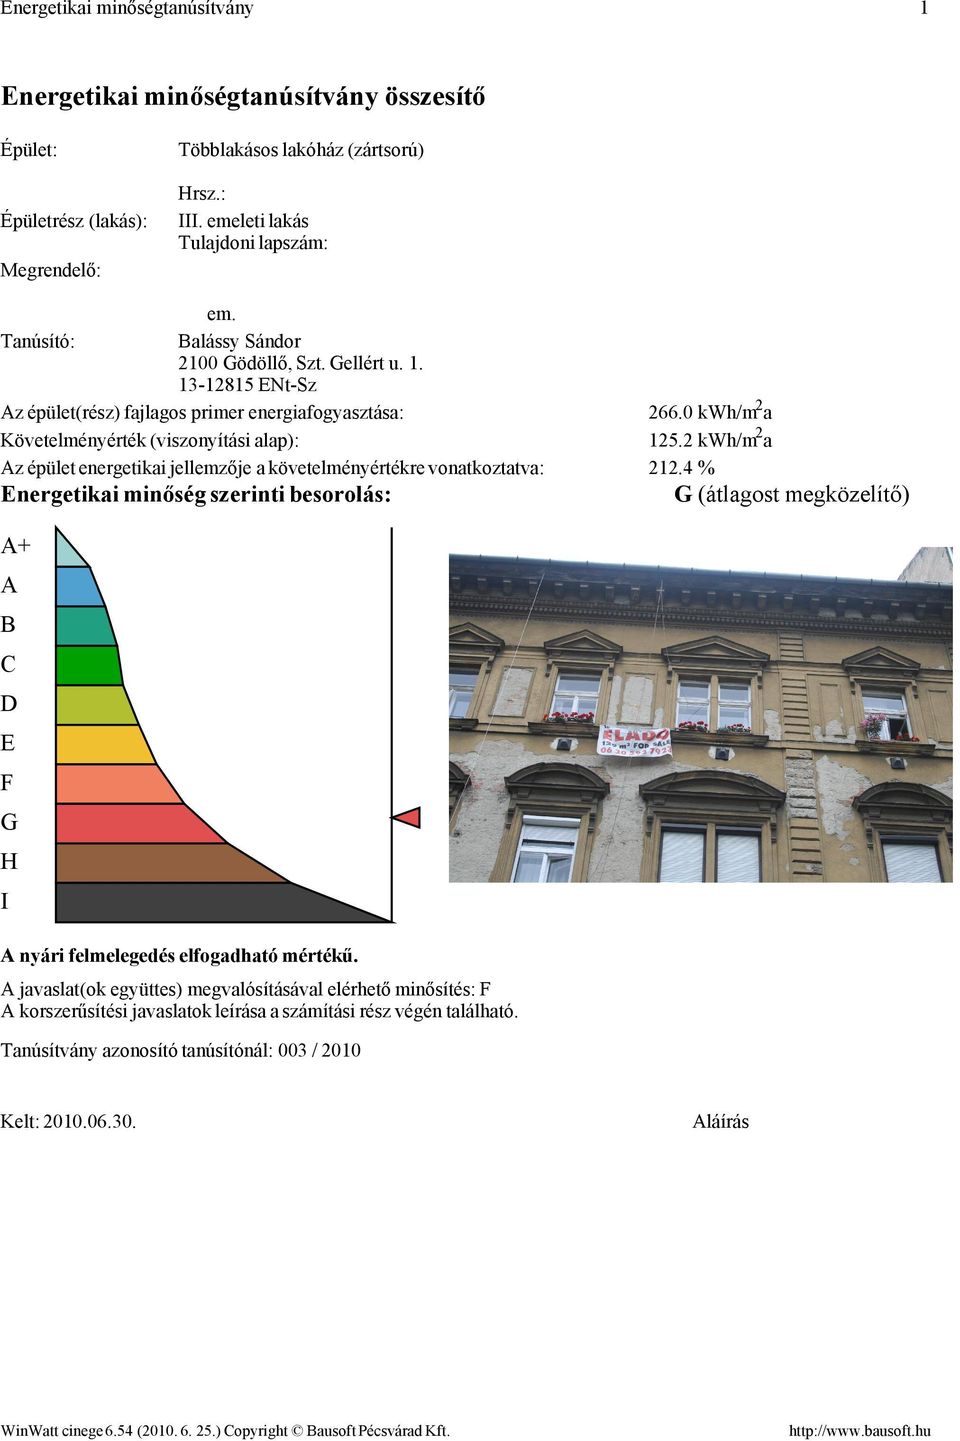 13-12815 ENt-Sz Az épület(rész) fajlagos primer energiafogyasztása: Követelményérték (viszonyítási alap): Az épület energetikai jellemzője a követelményértékre vonatkoztatva: Energetikai minőség